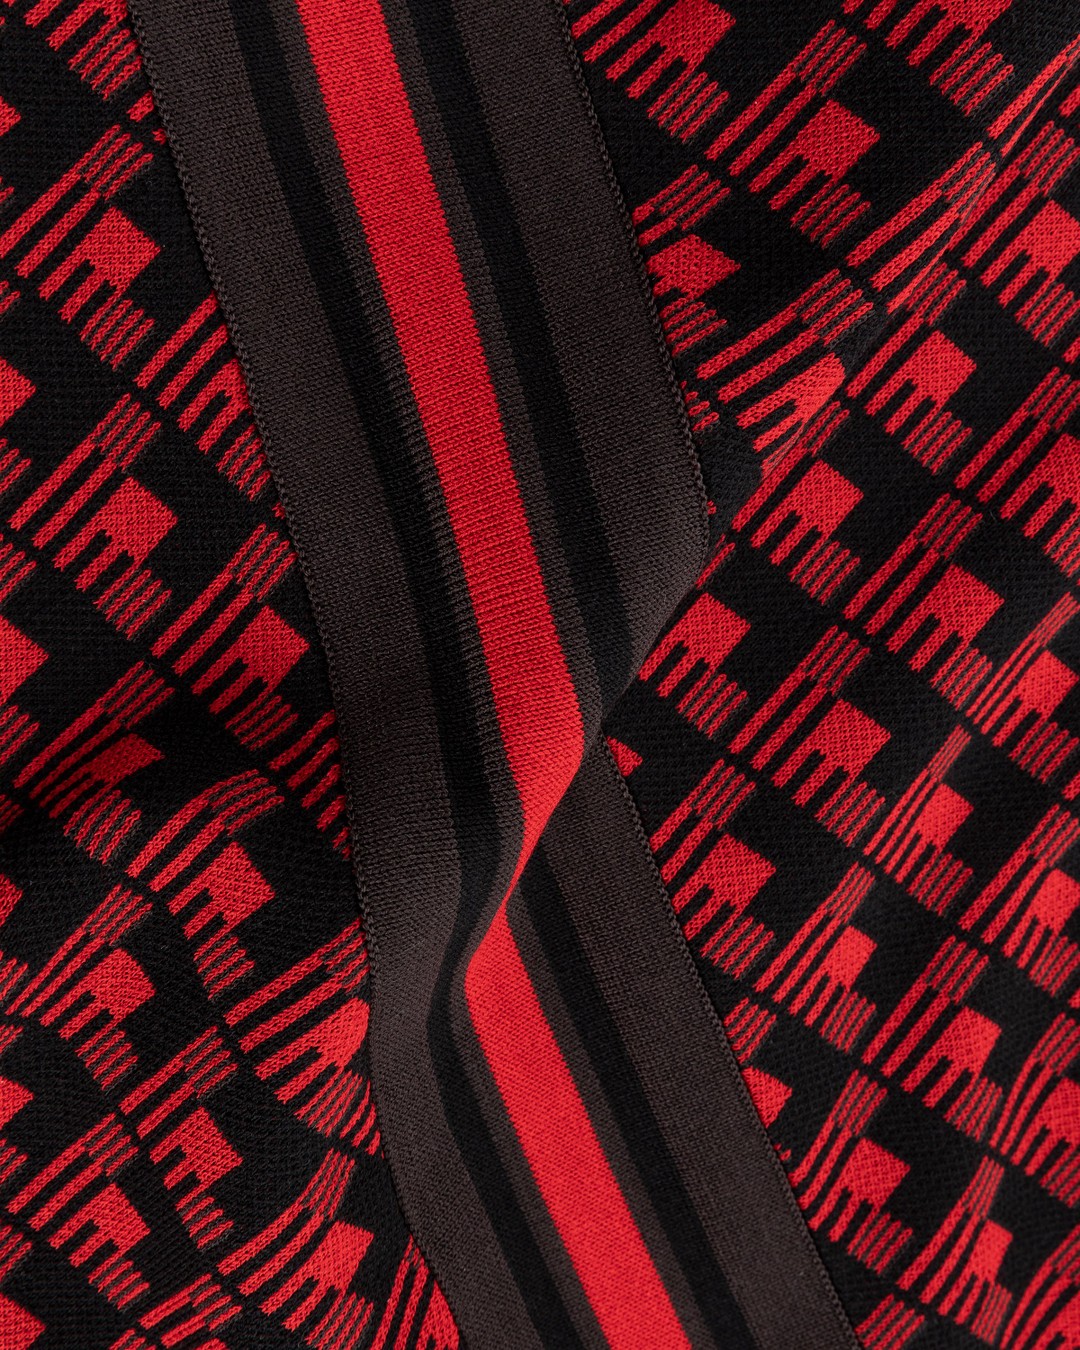 Adidas x Wales Bonner – WB Knit Vest Scarlet/Black - Gilets - Red - Image 5